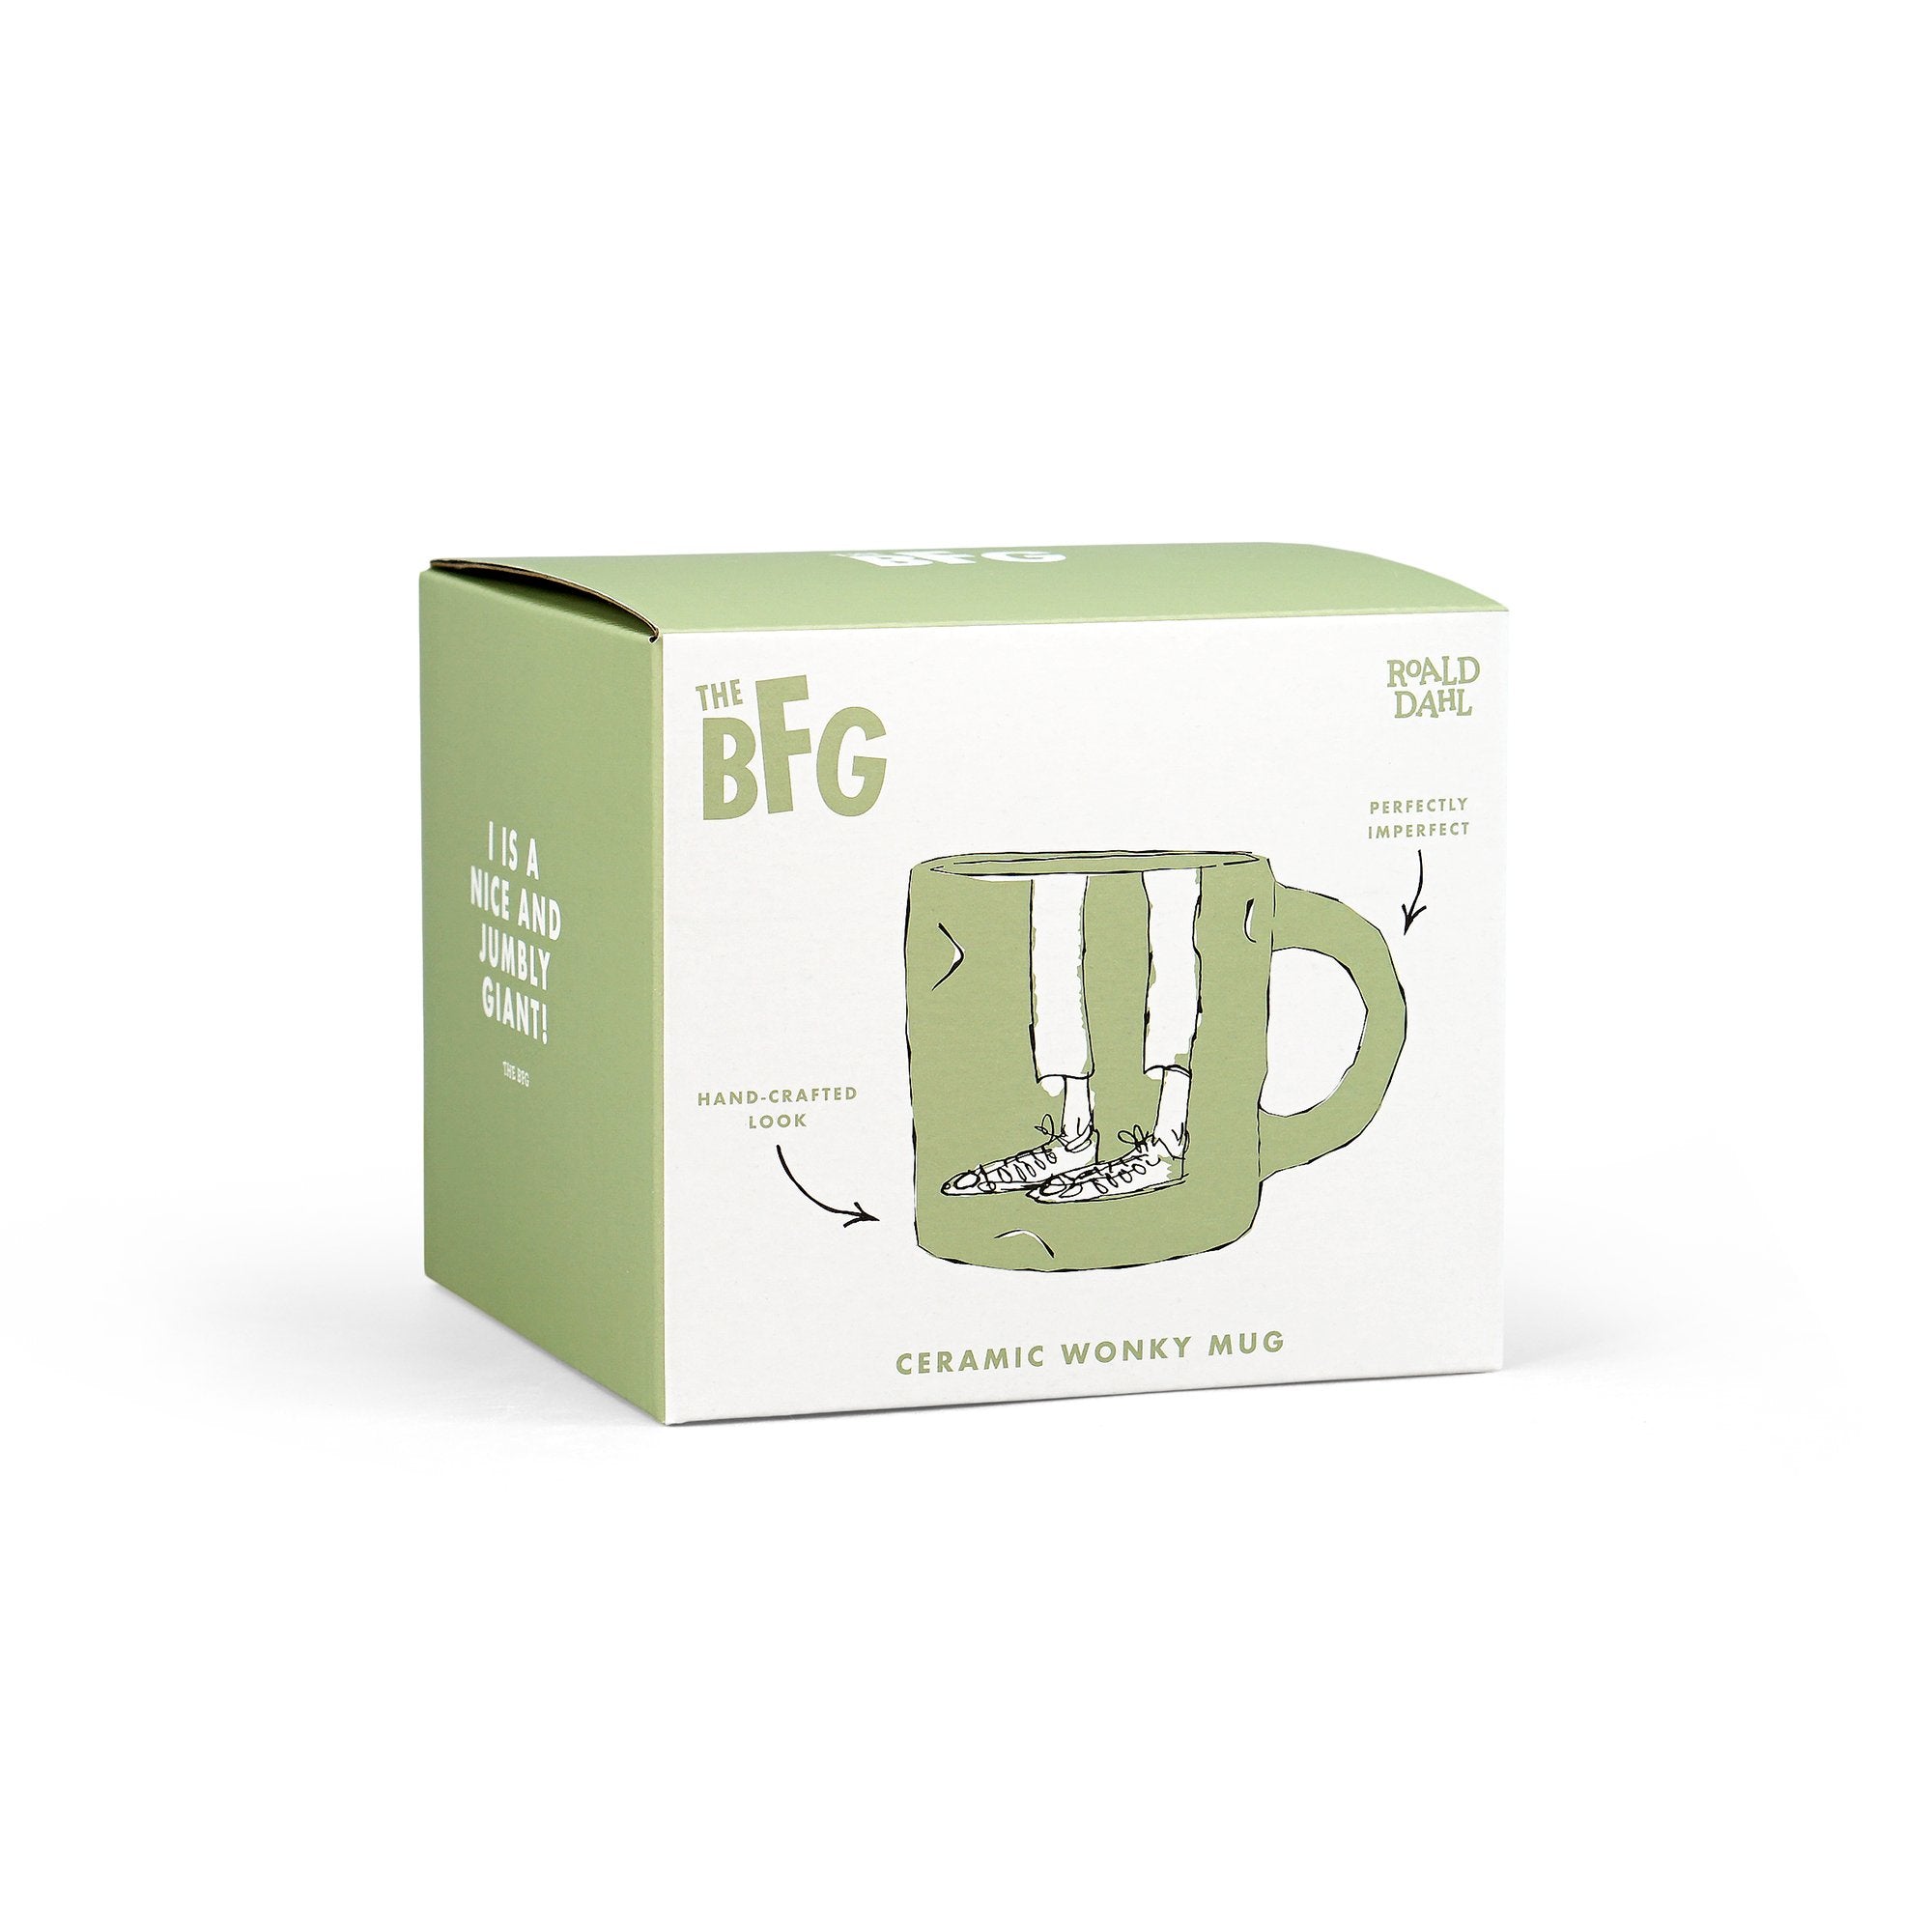 Mug Wonky Boxed (460ml) - Roald Dahl (The BFG)